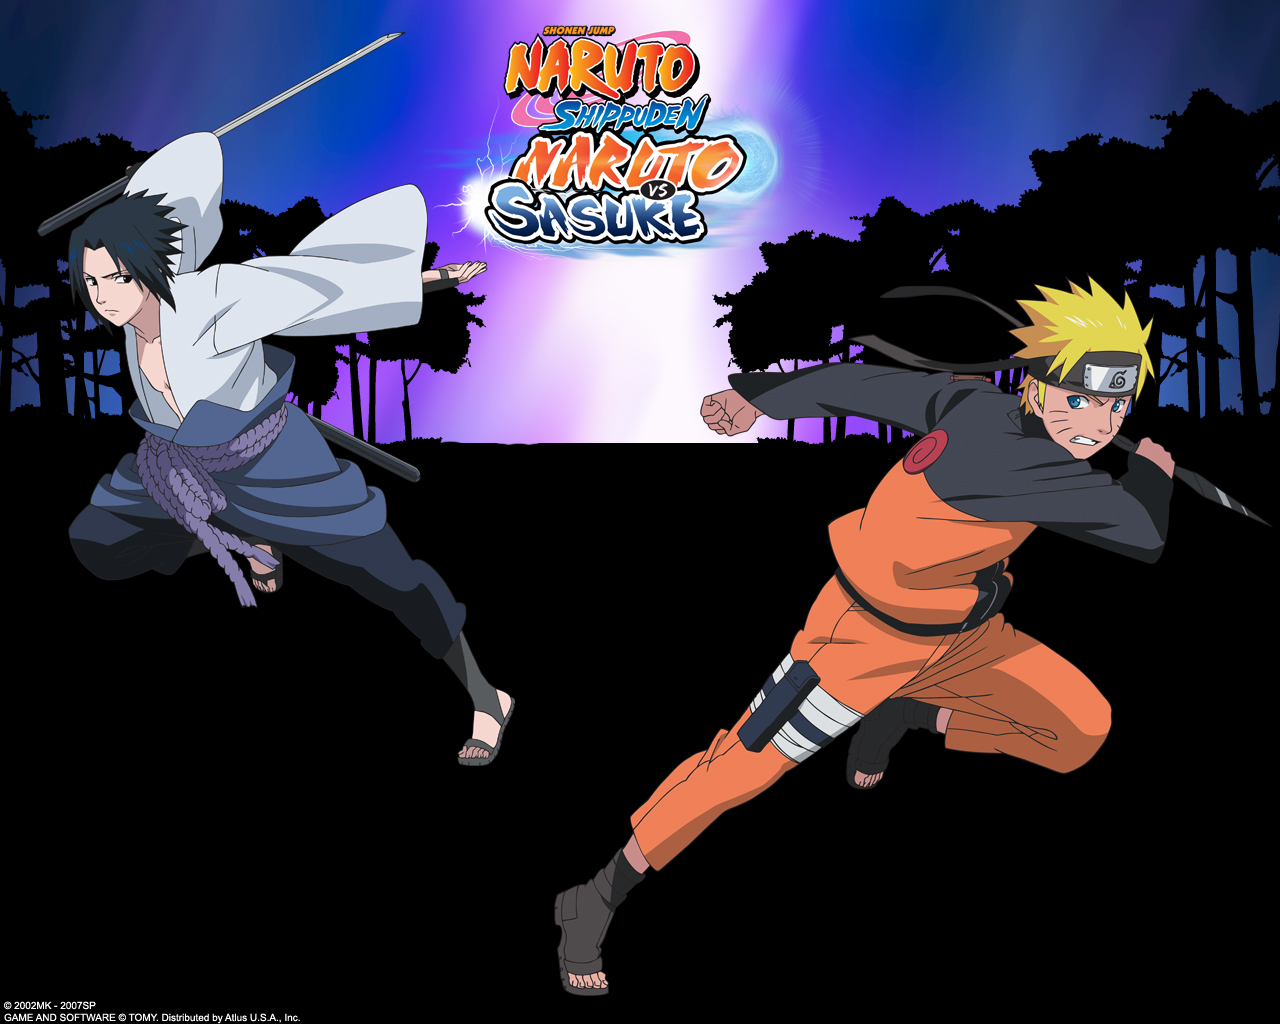 Naruto Shippuden: Naruto vs. Sasuke Wallpaper by Maxiuchiha22 on DeviantArt